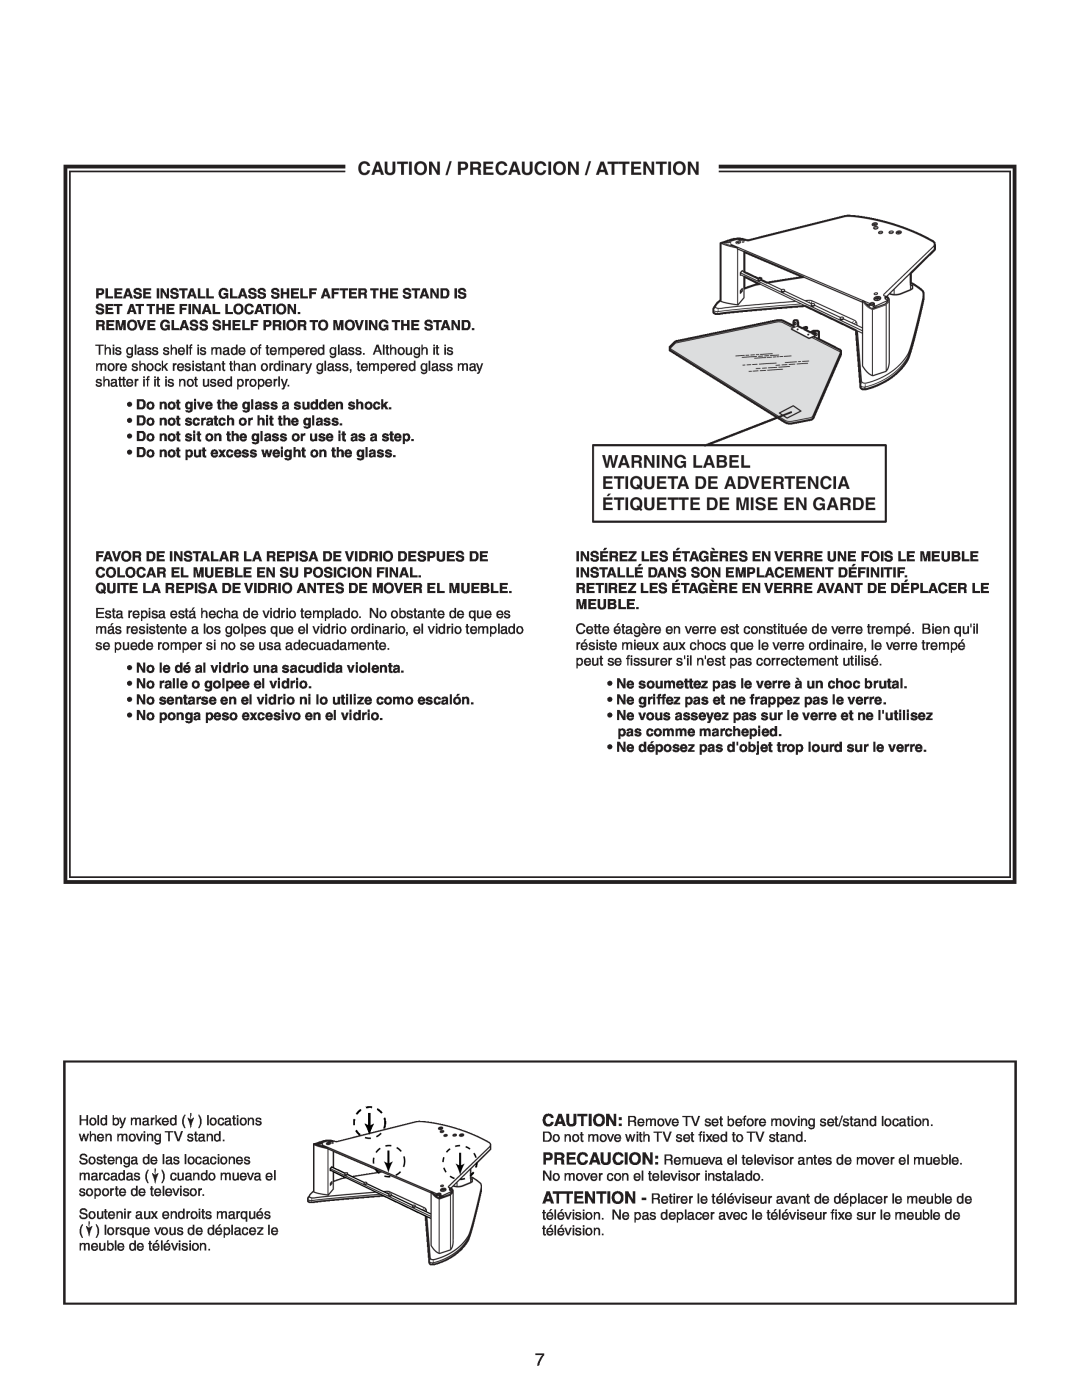 Sony SU-36HX1 manual Caution / Precaucion / Attention, Warning Label 